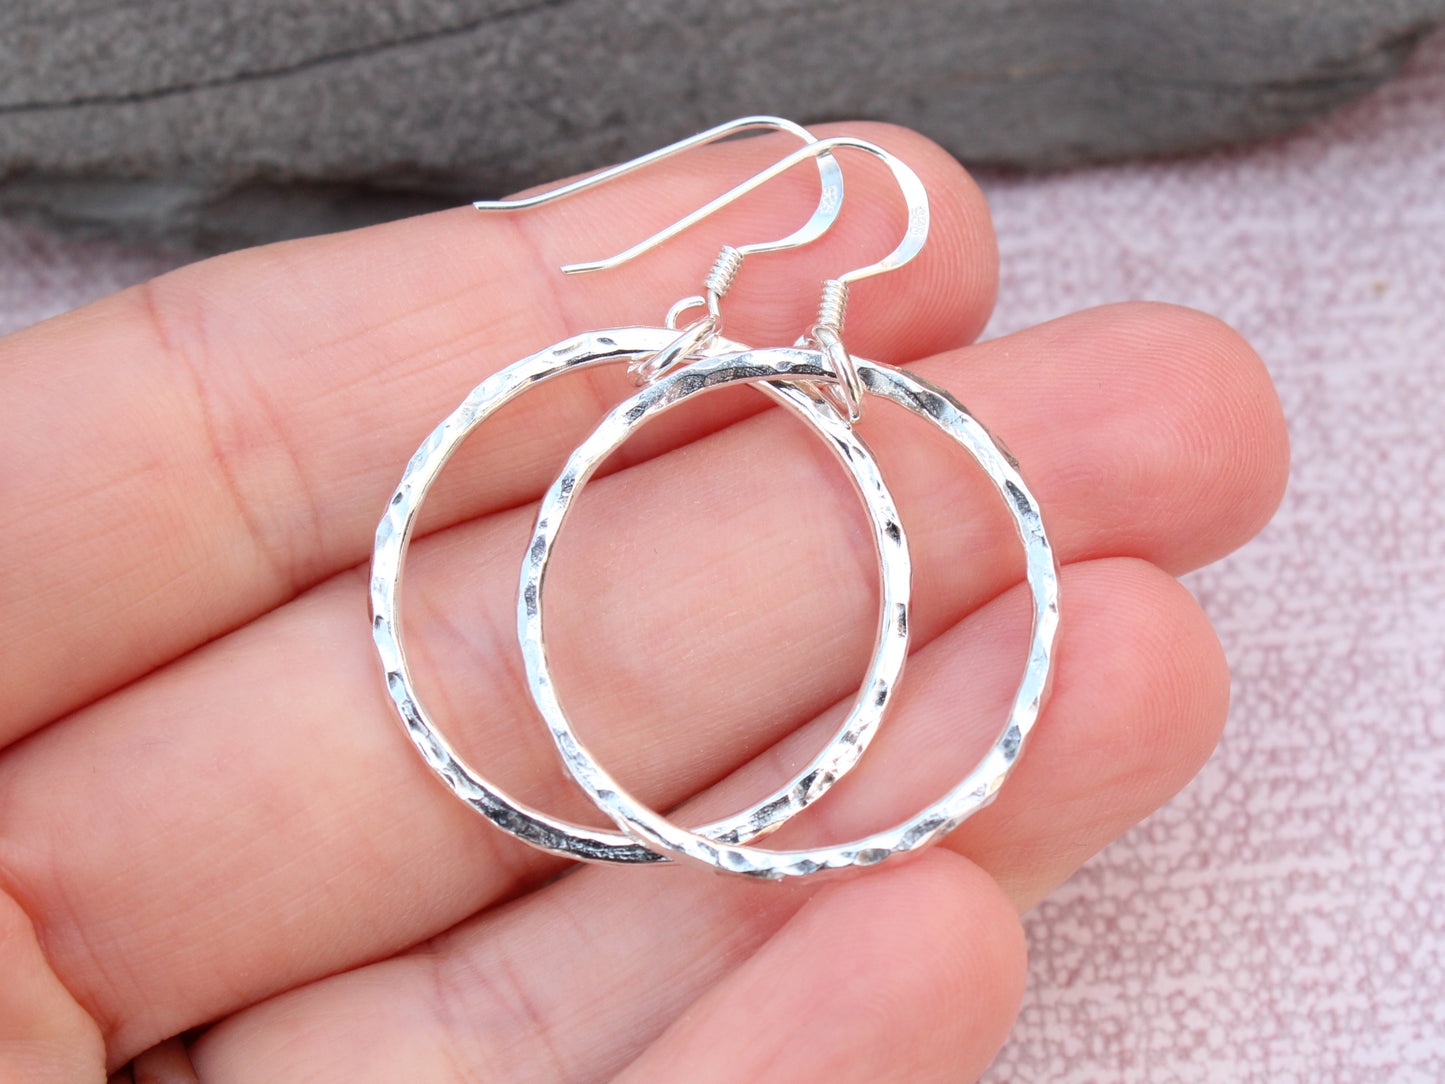 Handmade recycled sterling silver hoop earrings.